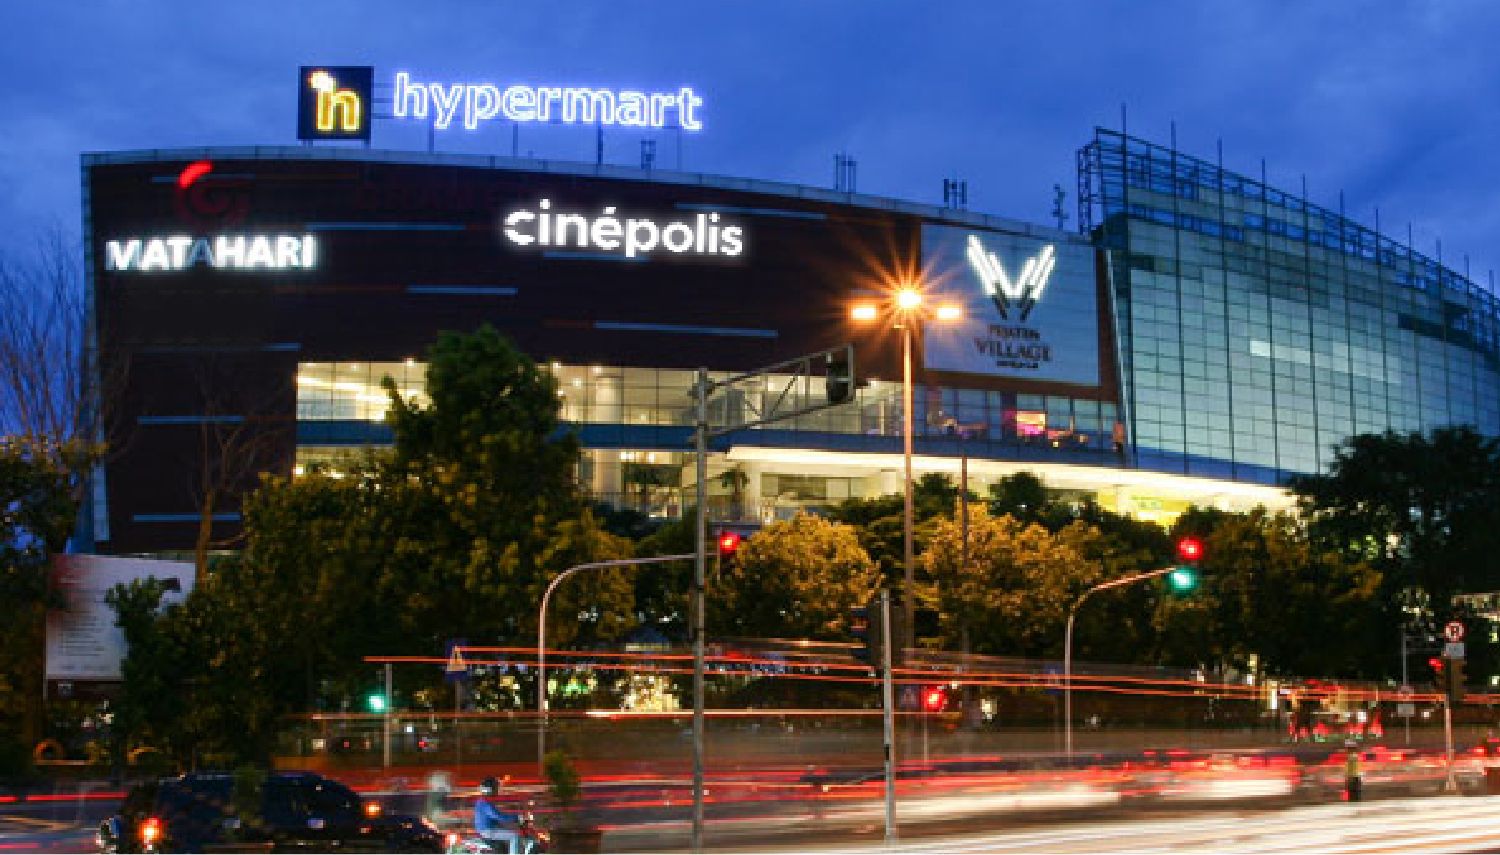 Jadwal Film Dan Harga Tiket Bioskop Cinepolis Pejaten Village Jakarta Hari Ini